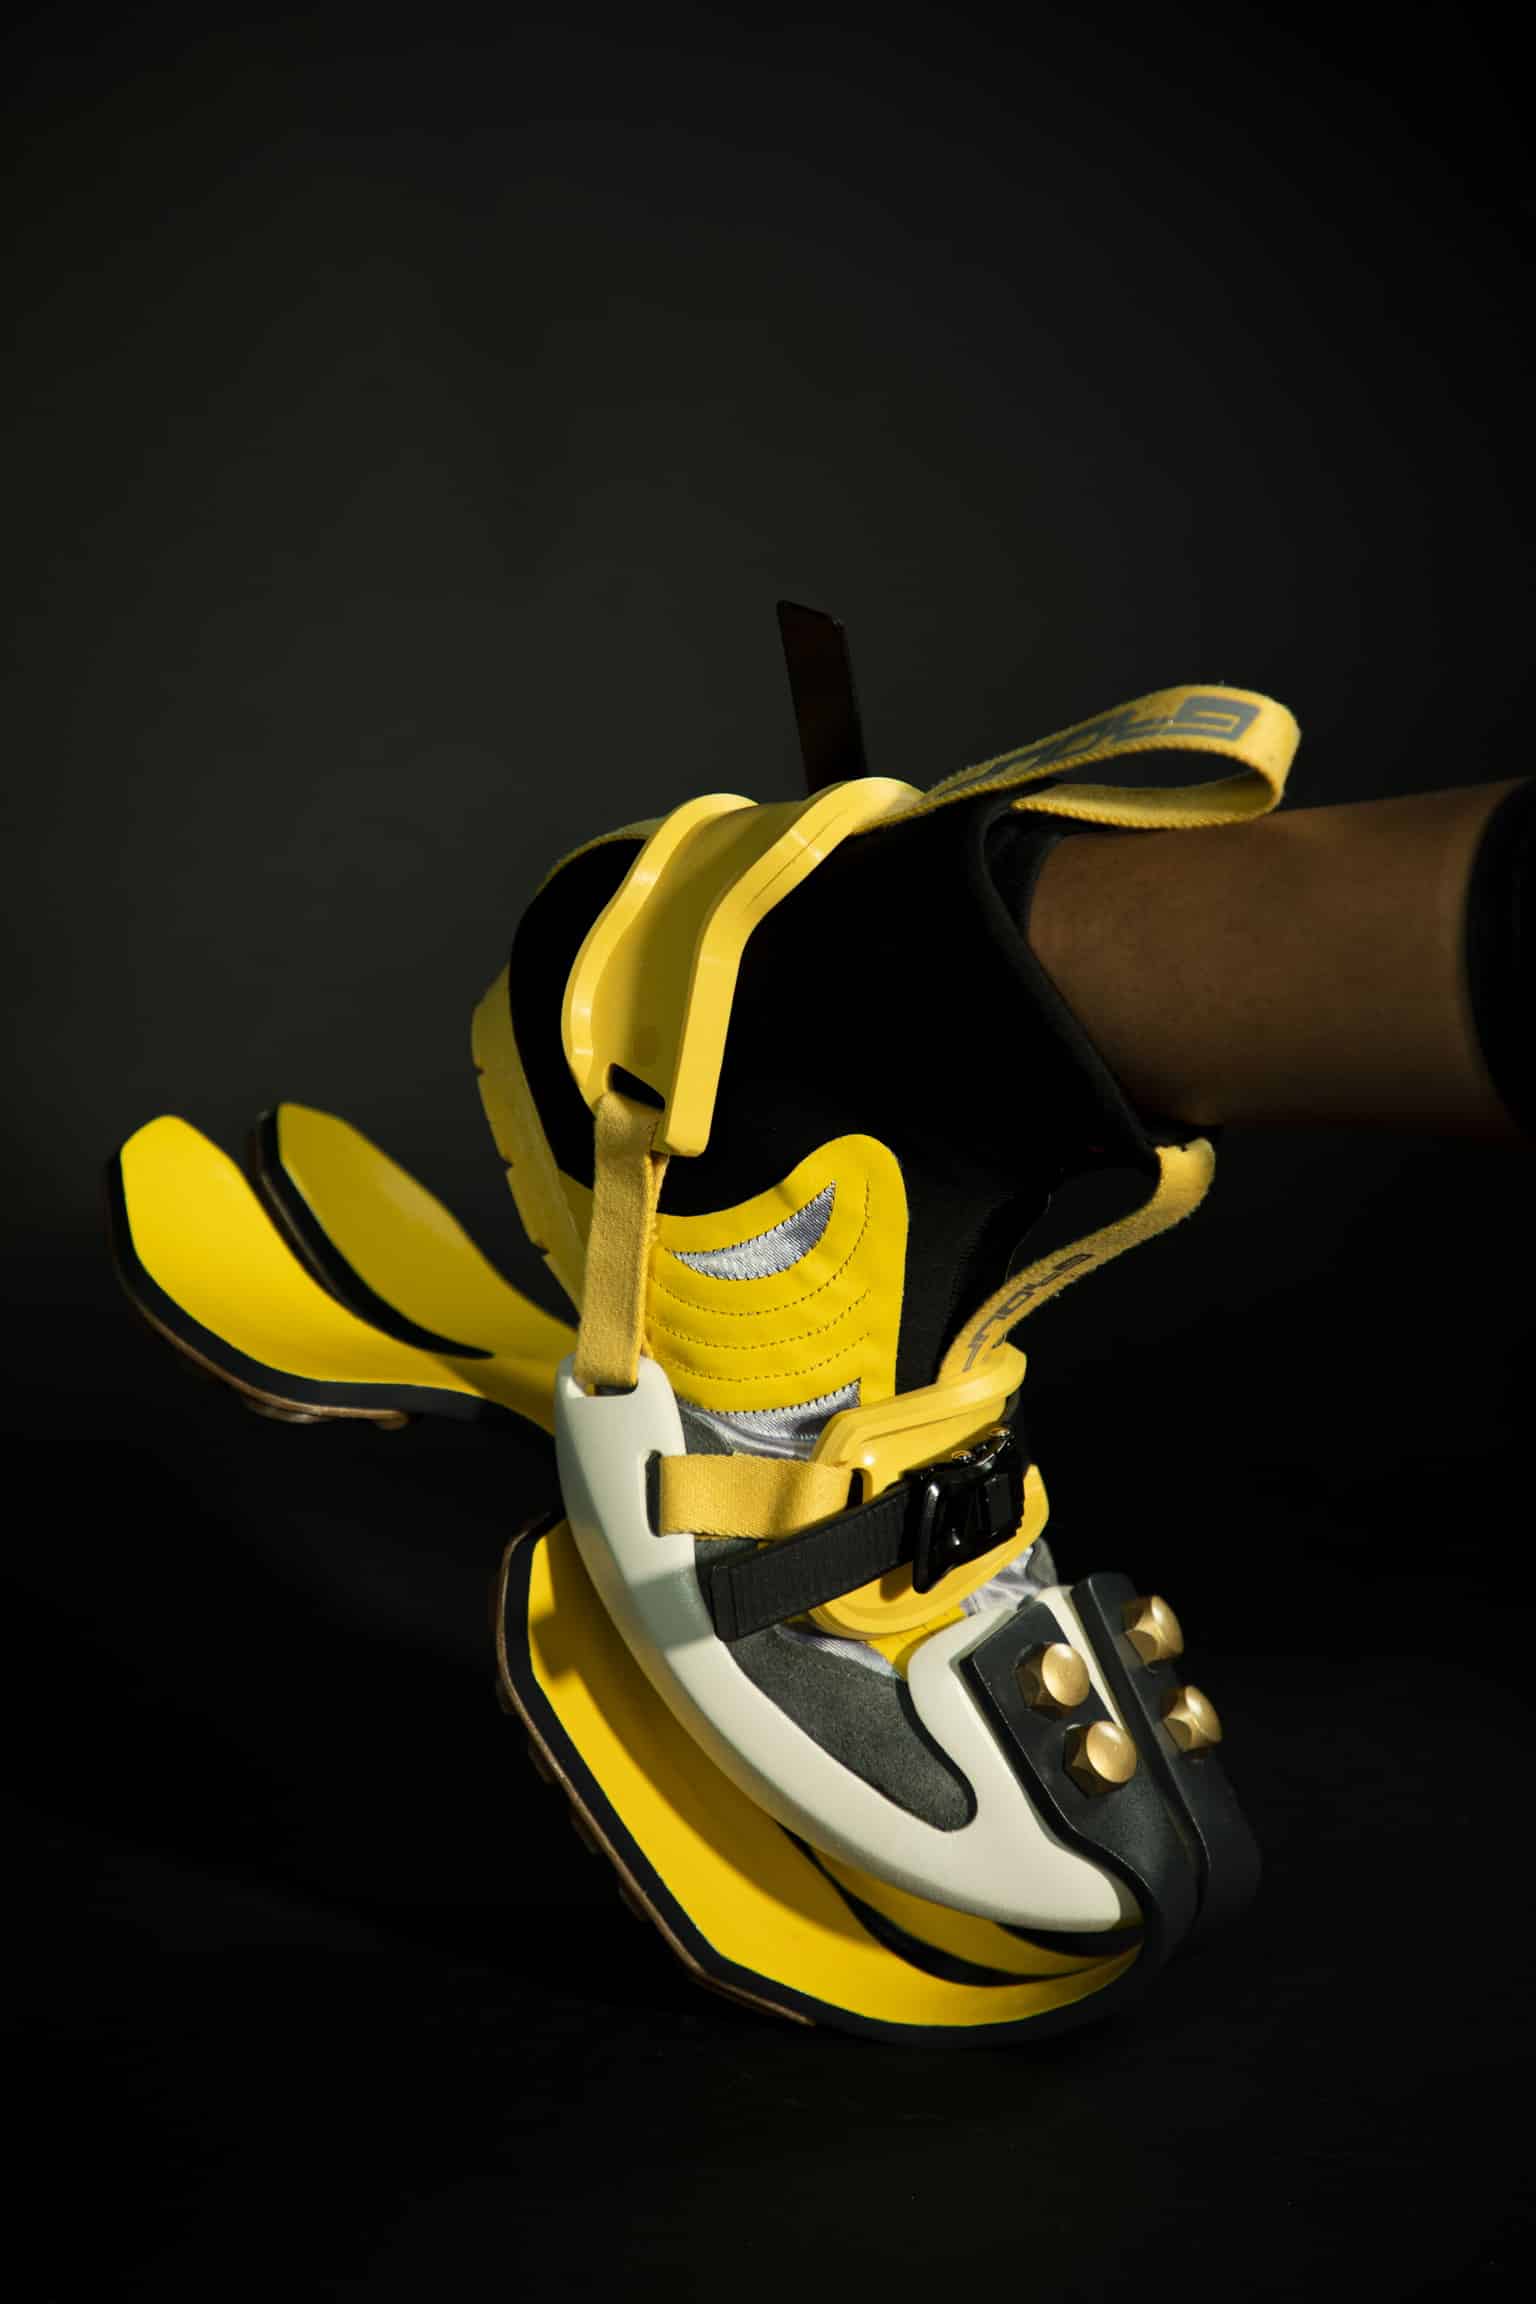 De schoenontwerpen van GABRIEL GIORDANO zijn experimenten met materialen en silhouetten.  Ze ontstaan door combinaties van technieken en concepten uit allerlei gebieden van onze cultuur.  Ook stylistische aspecten schuiven over en in elkaar om zo tot radicale heroverwegingen te komen van wat een schoen kan zijn.